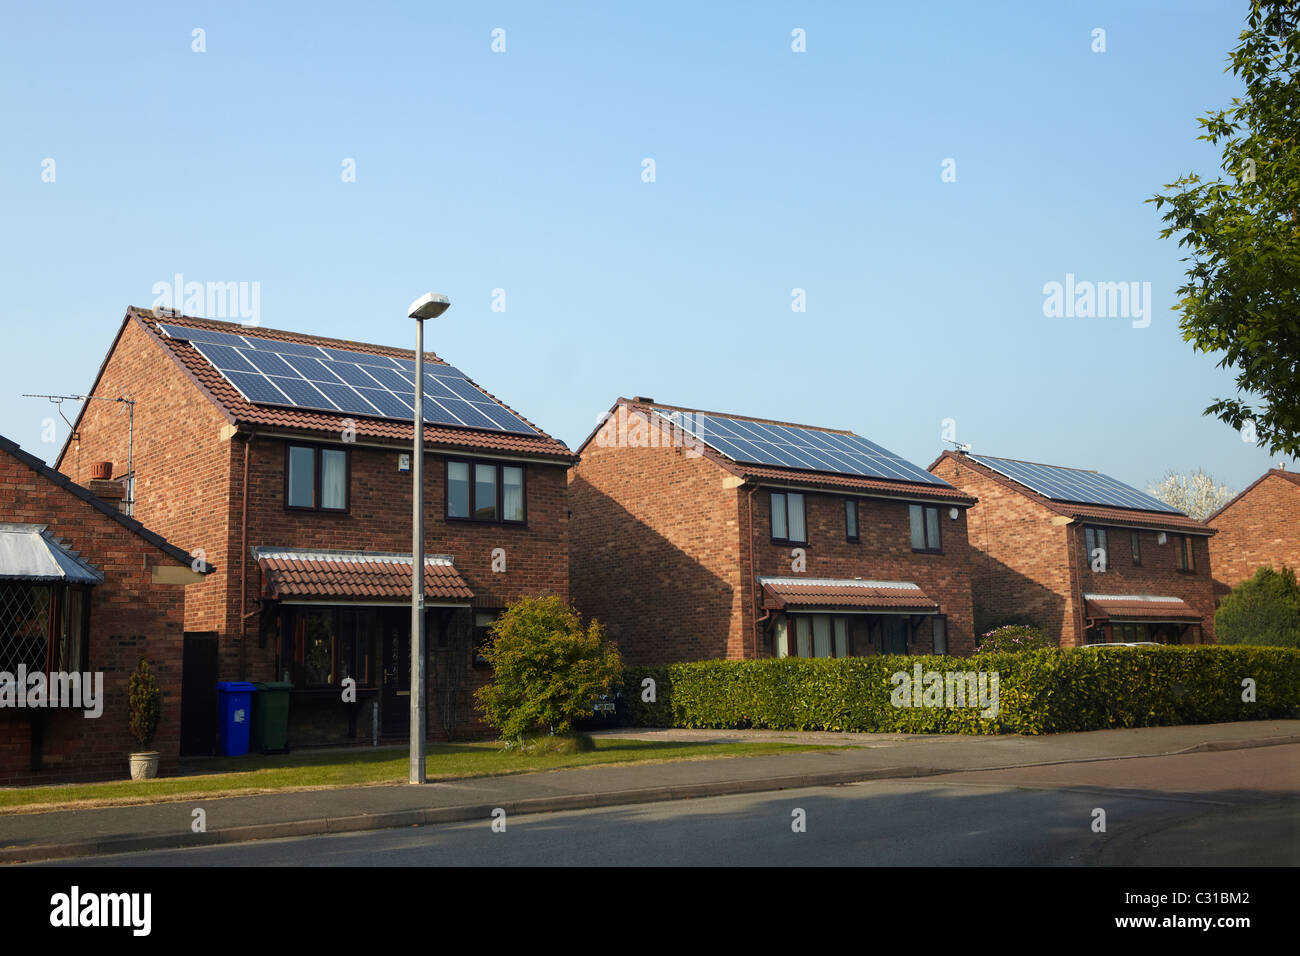 Pannelli solari fotovoltaico PV sulle case in una strada Foto Stock